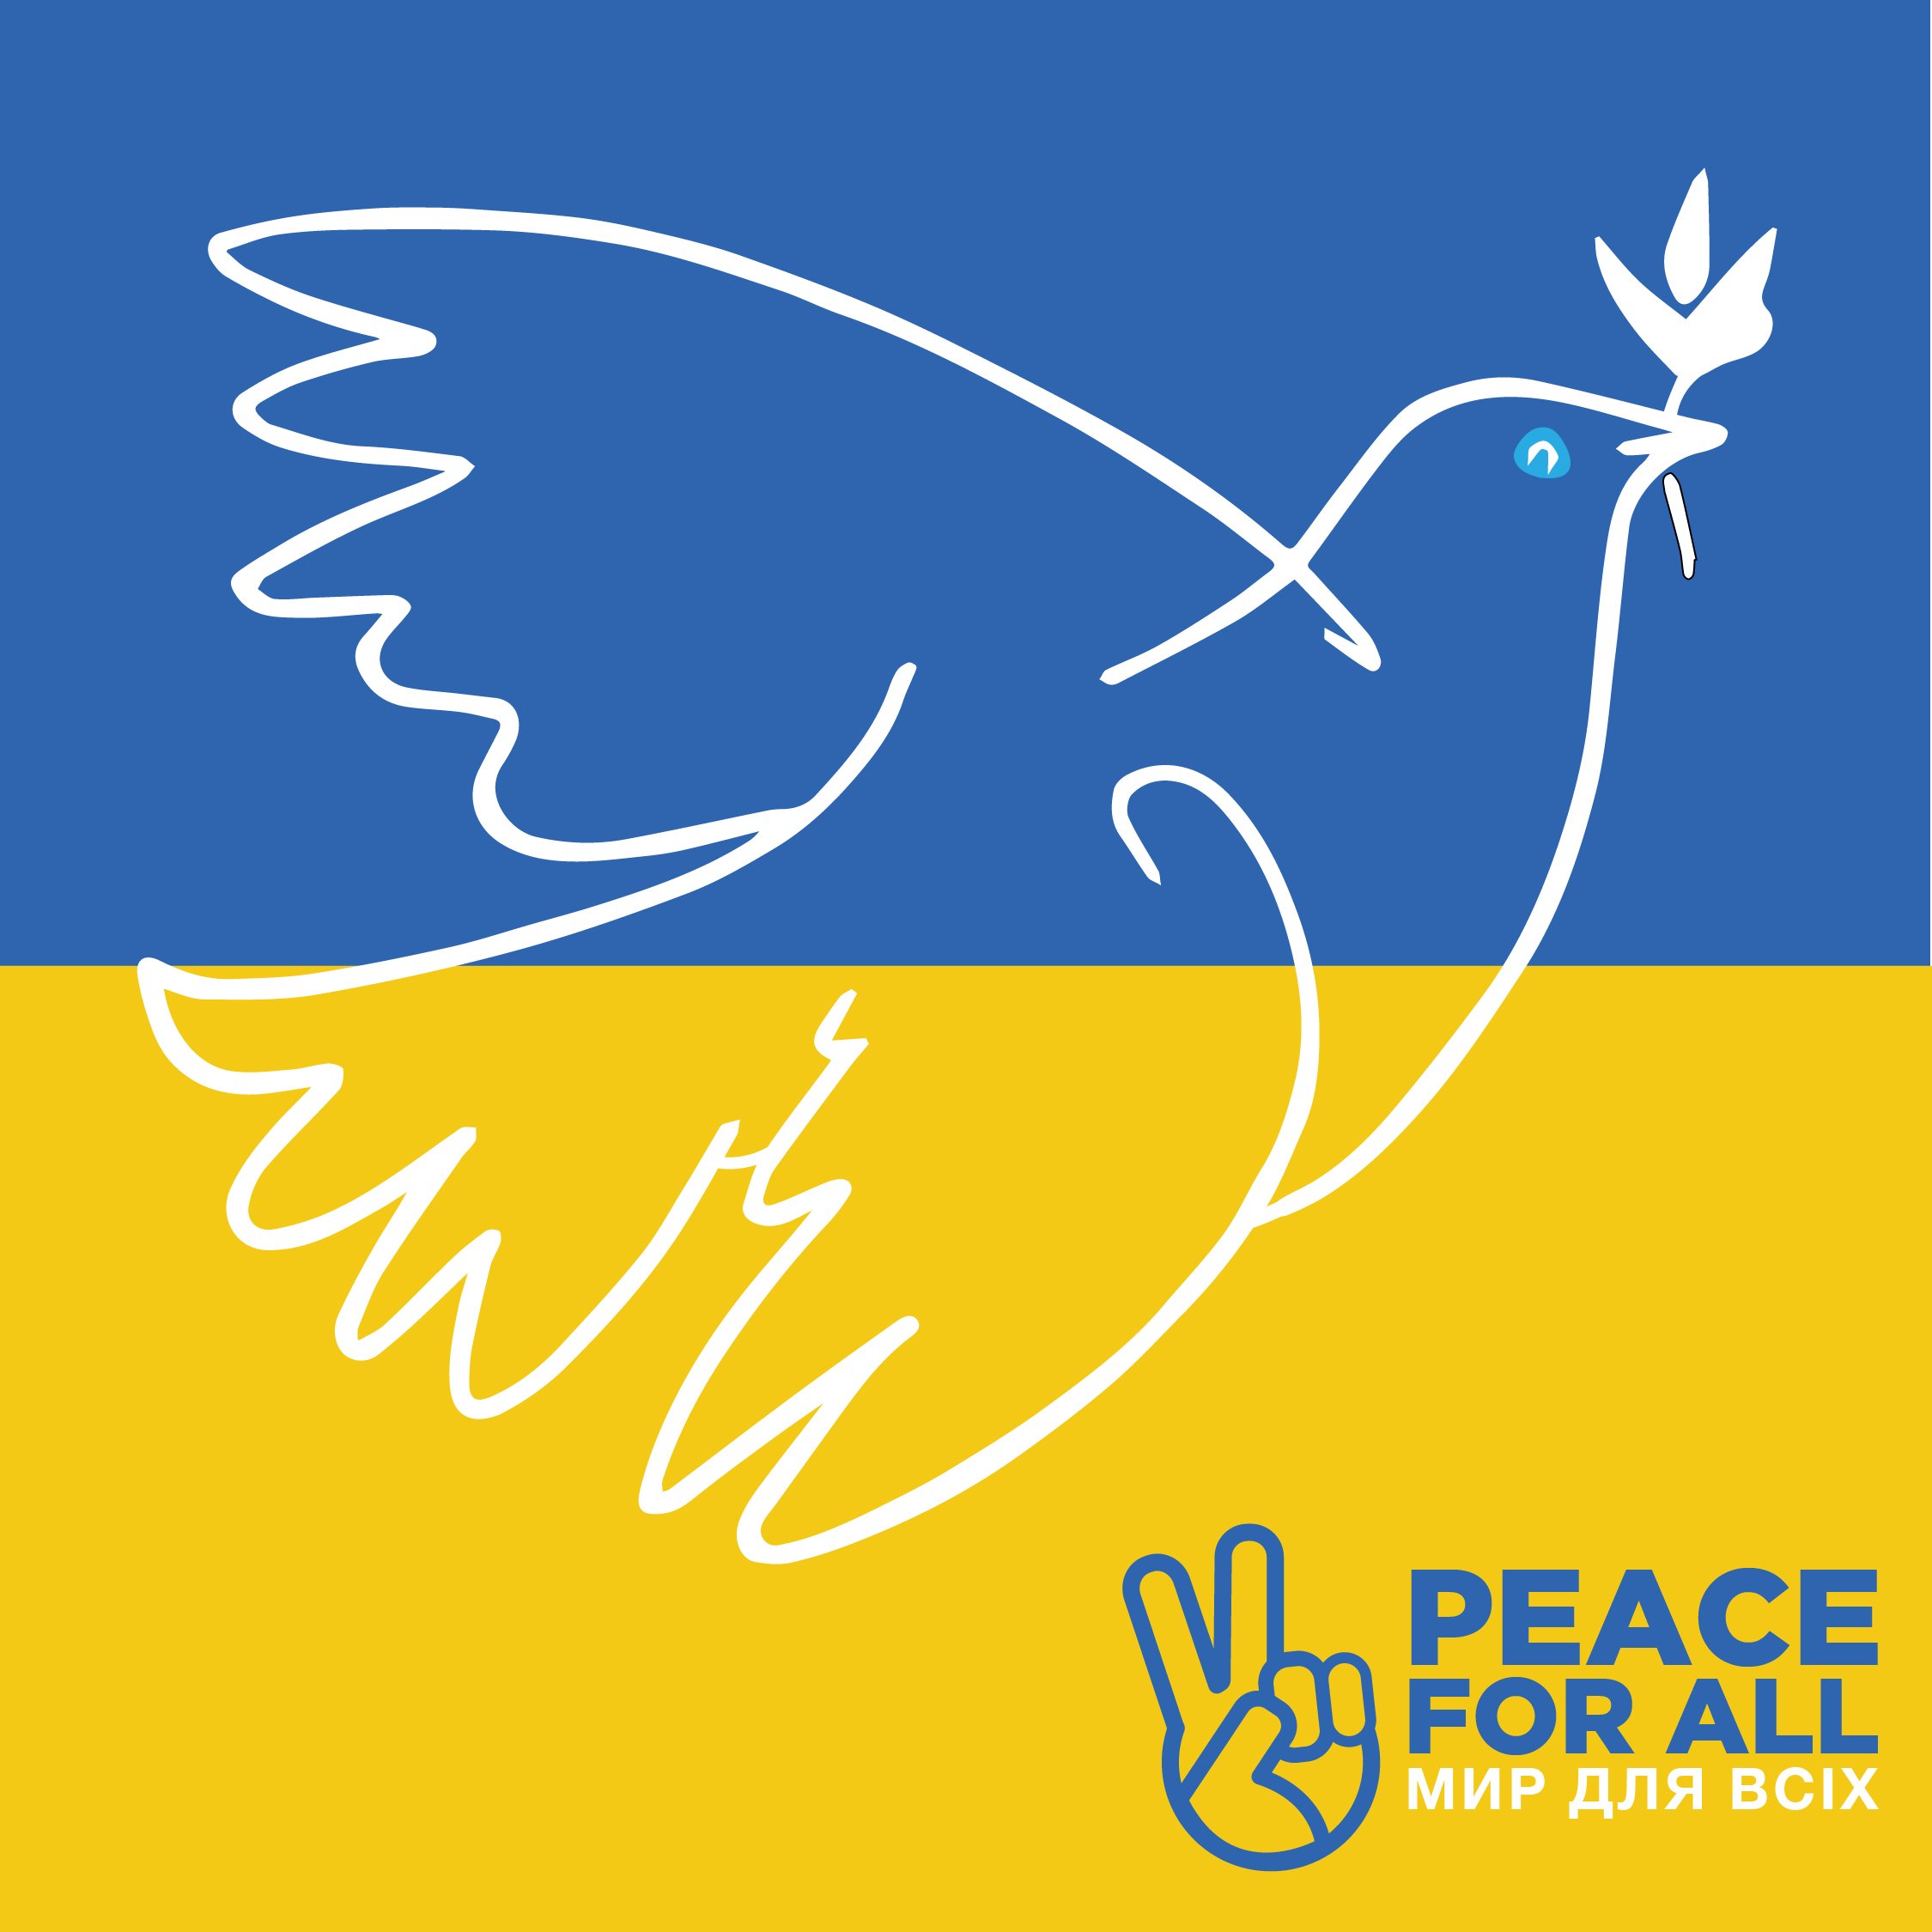 Peace for ALL Social Art-04.jpg